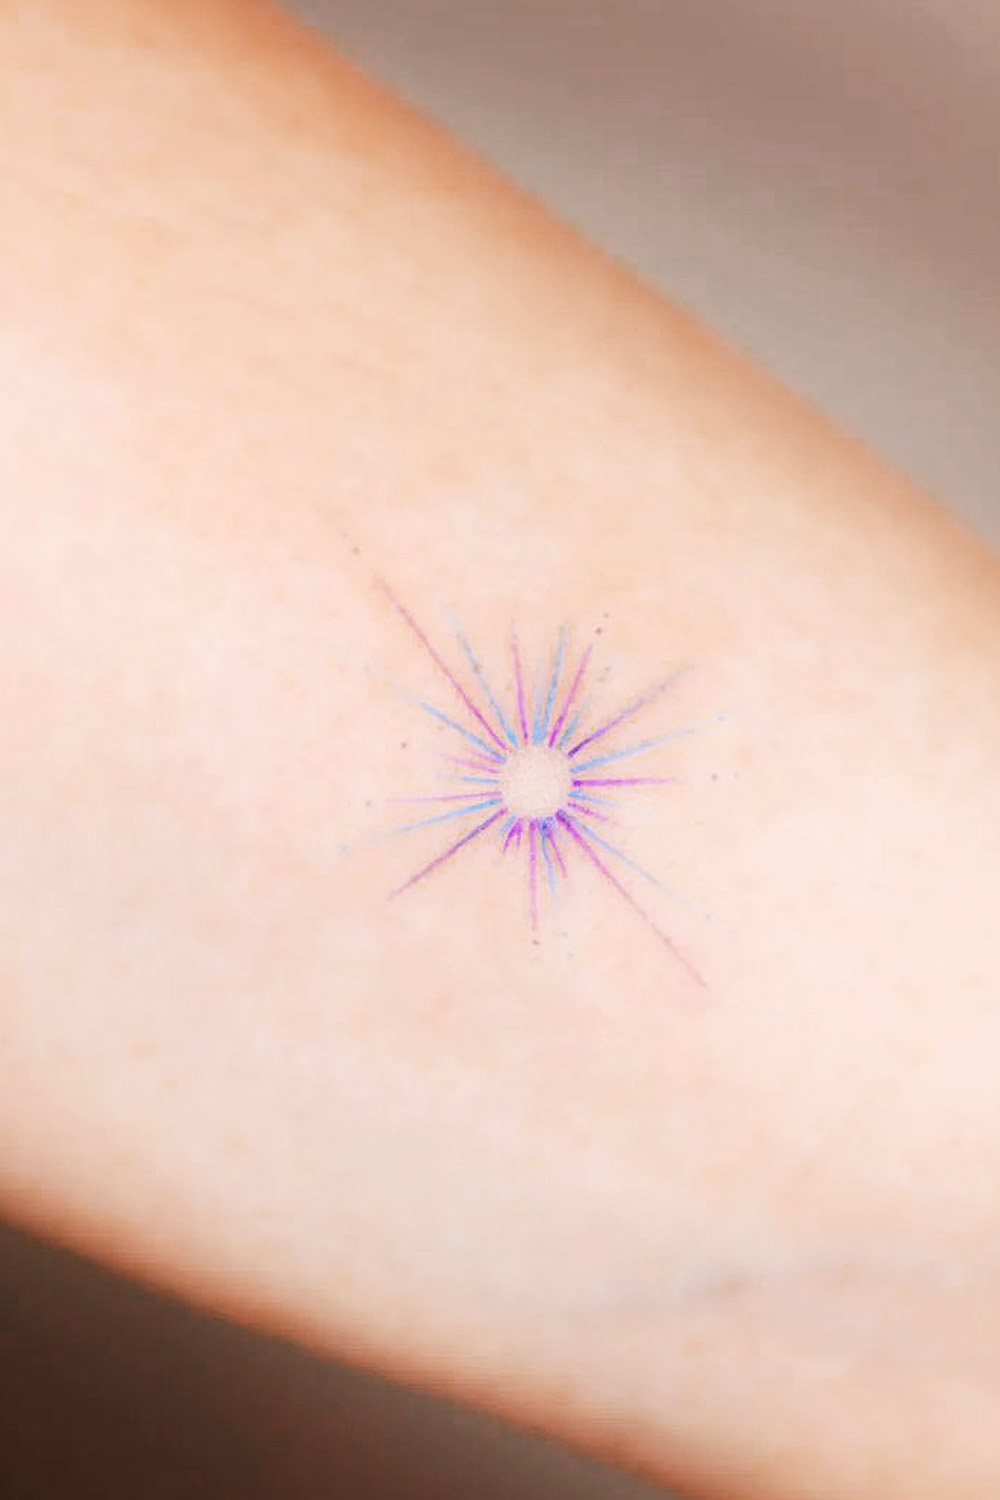 Simple Star tattoo | Star tattoos, Small star tattoos, Star tattoo designs-cheohanoi.vn